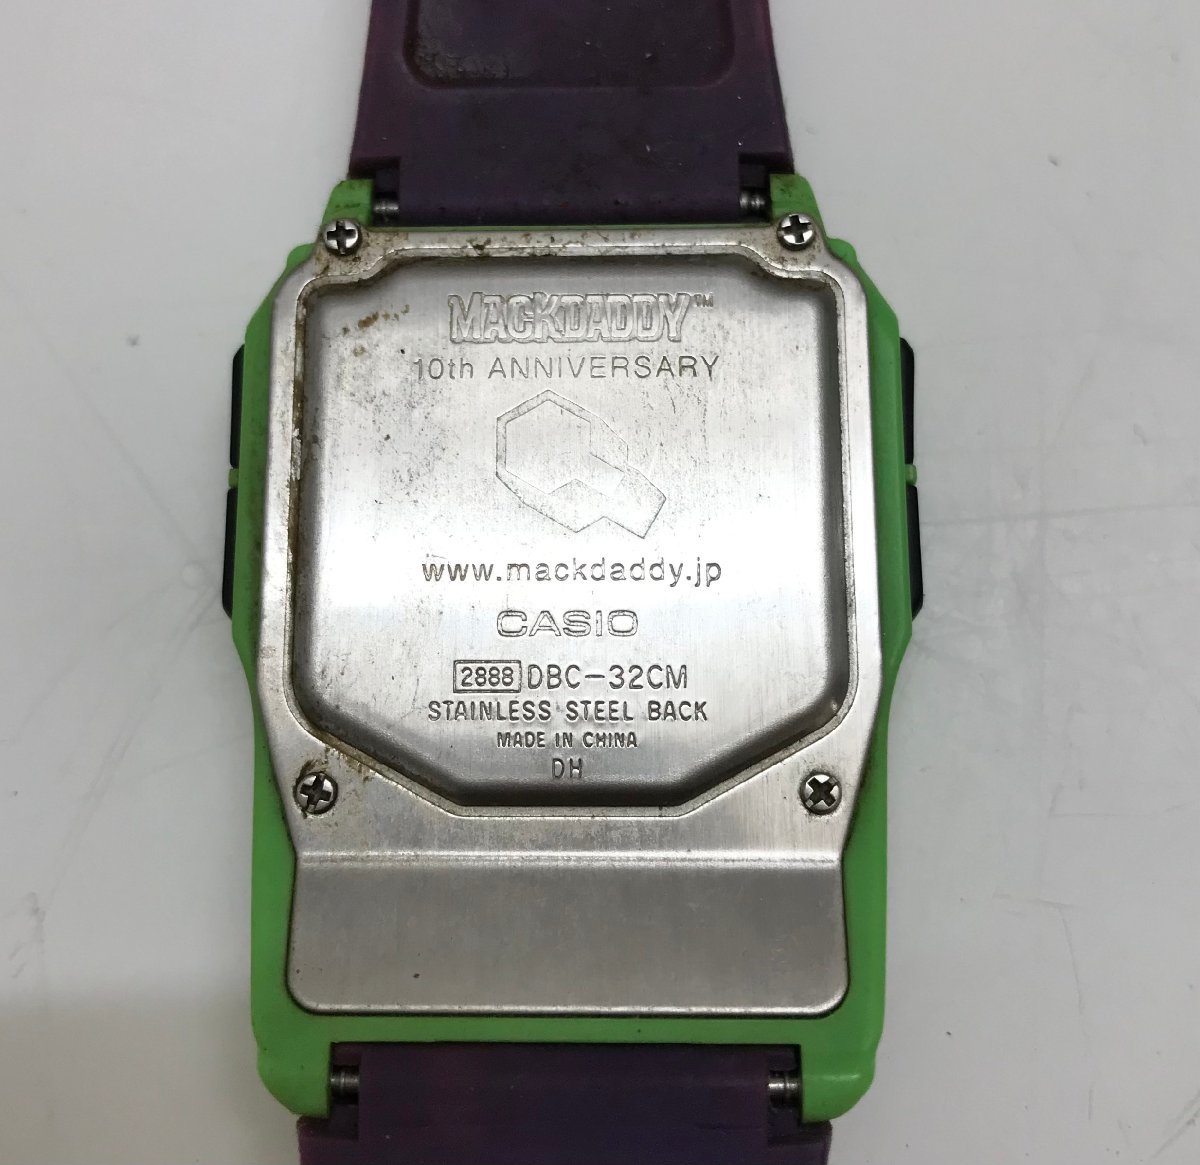 ◆【ジャンク品】 MACKDADDY CASIO マックダディー カシオ デジタル 腕時計 10th ANNIVERSARY DBC-32CM 現状品 (E1)M/S60216/1/0.01_画像6